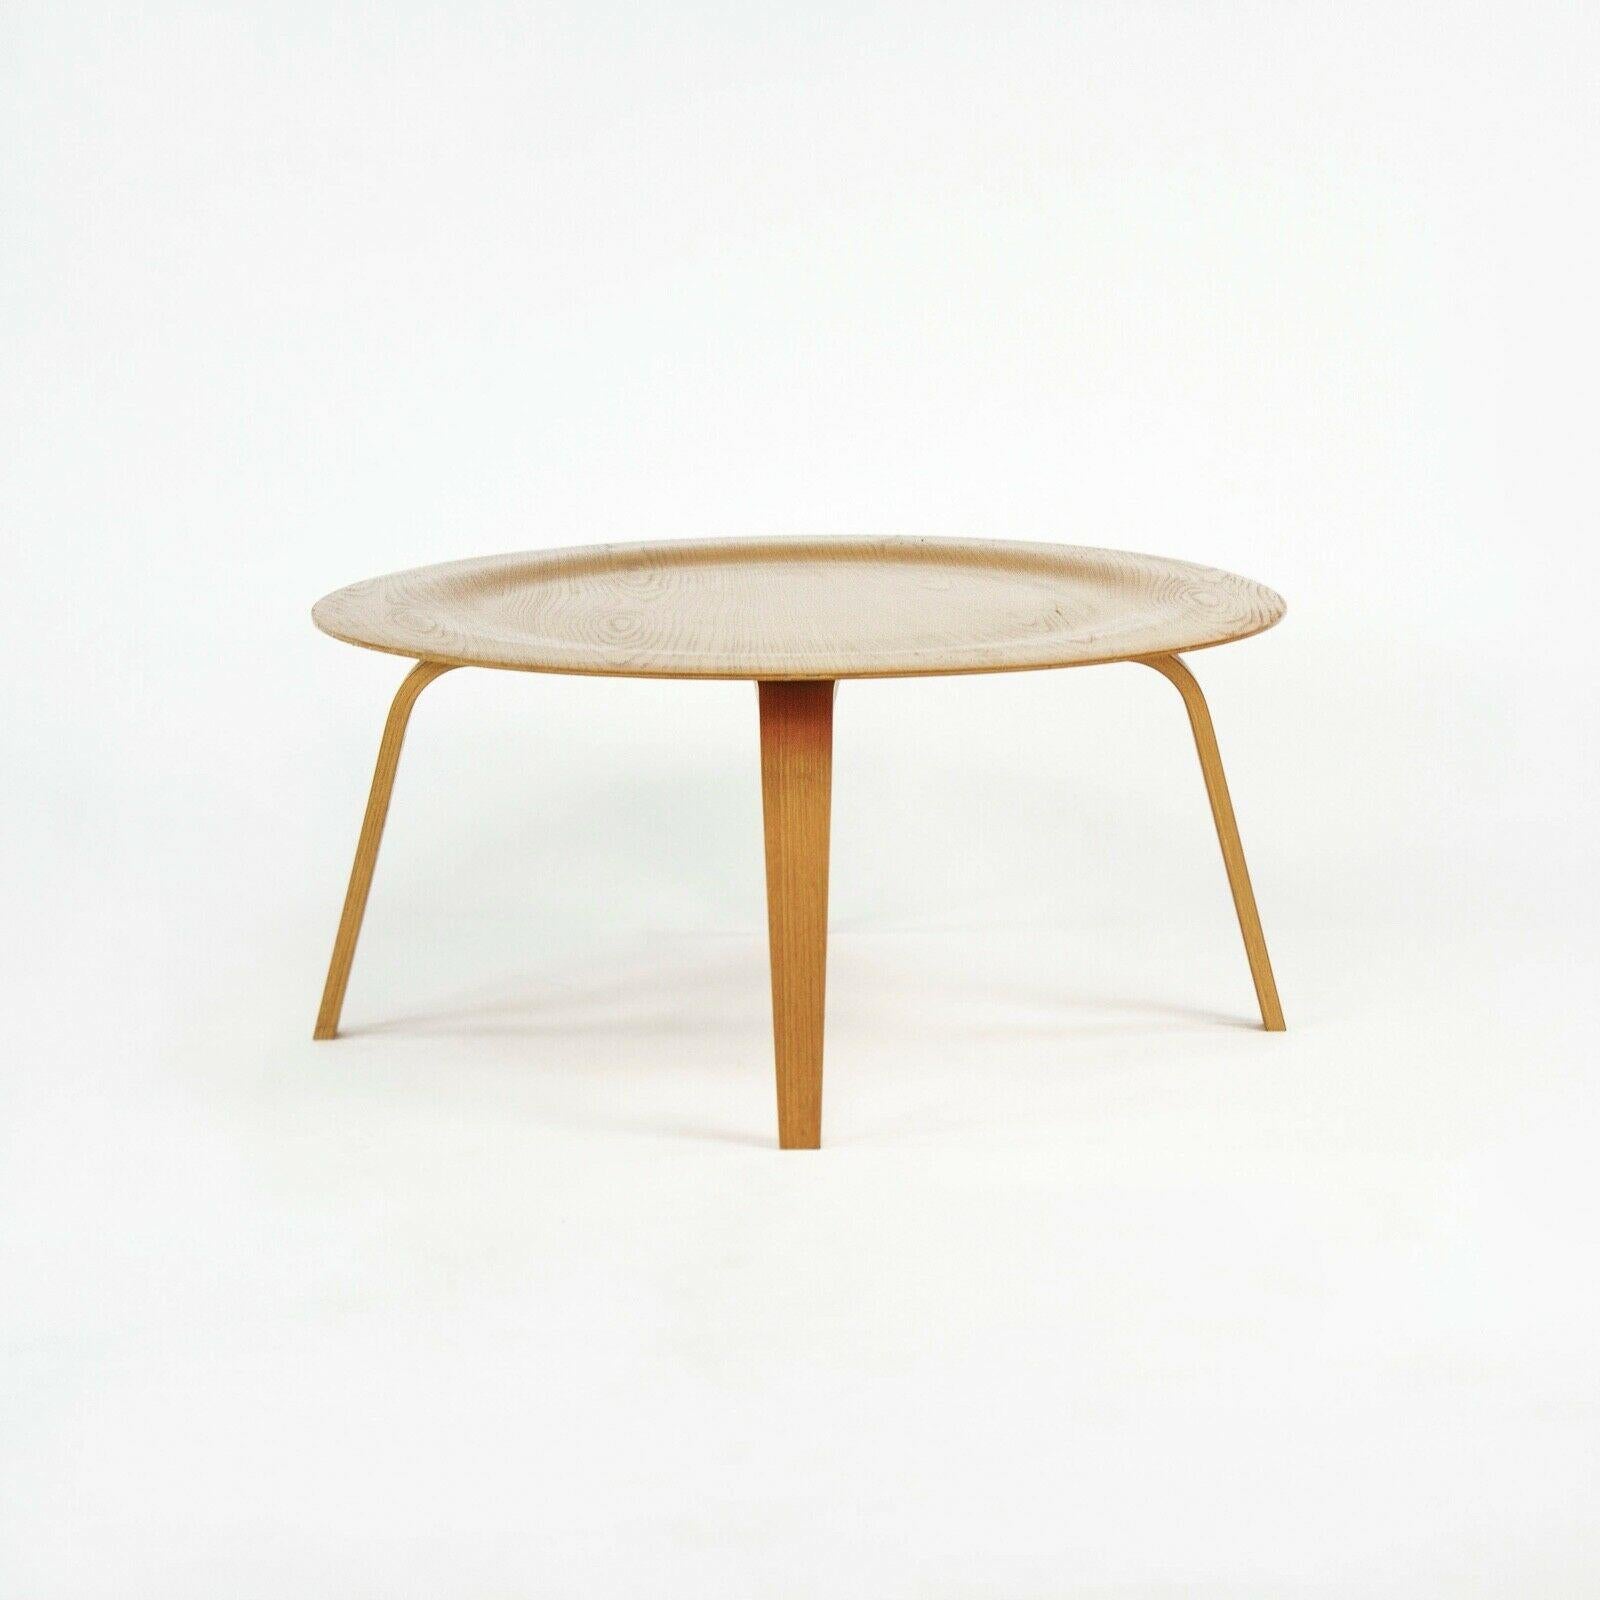 L'objet de la vente est une table basse en bois (CTW) de 2006, conçue par Ray et Charles Eames et produite par Herman Miller. Cet exemple a été spécifié en frêne blanc et provient d'un bâtiment universitaire du Midwest. La table est en très bon